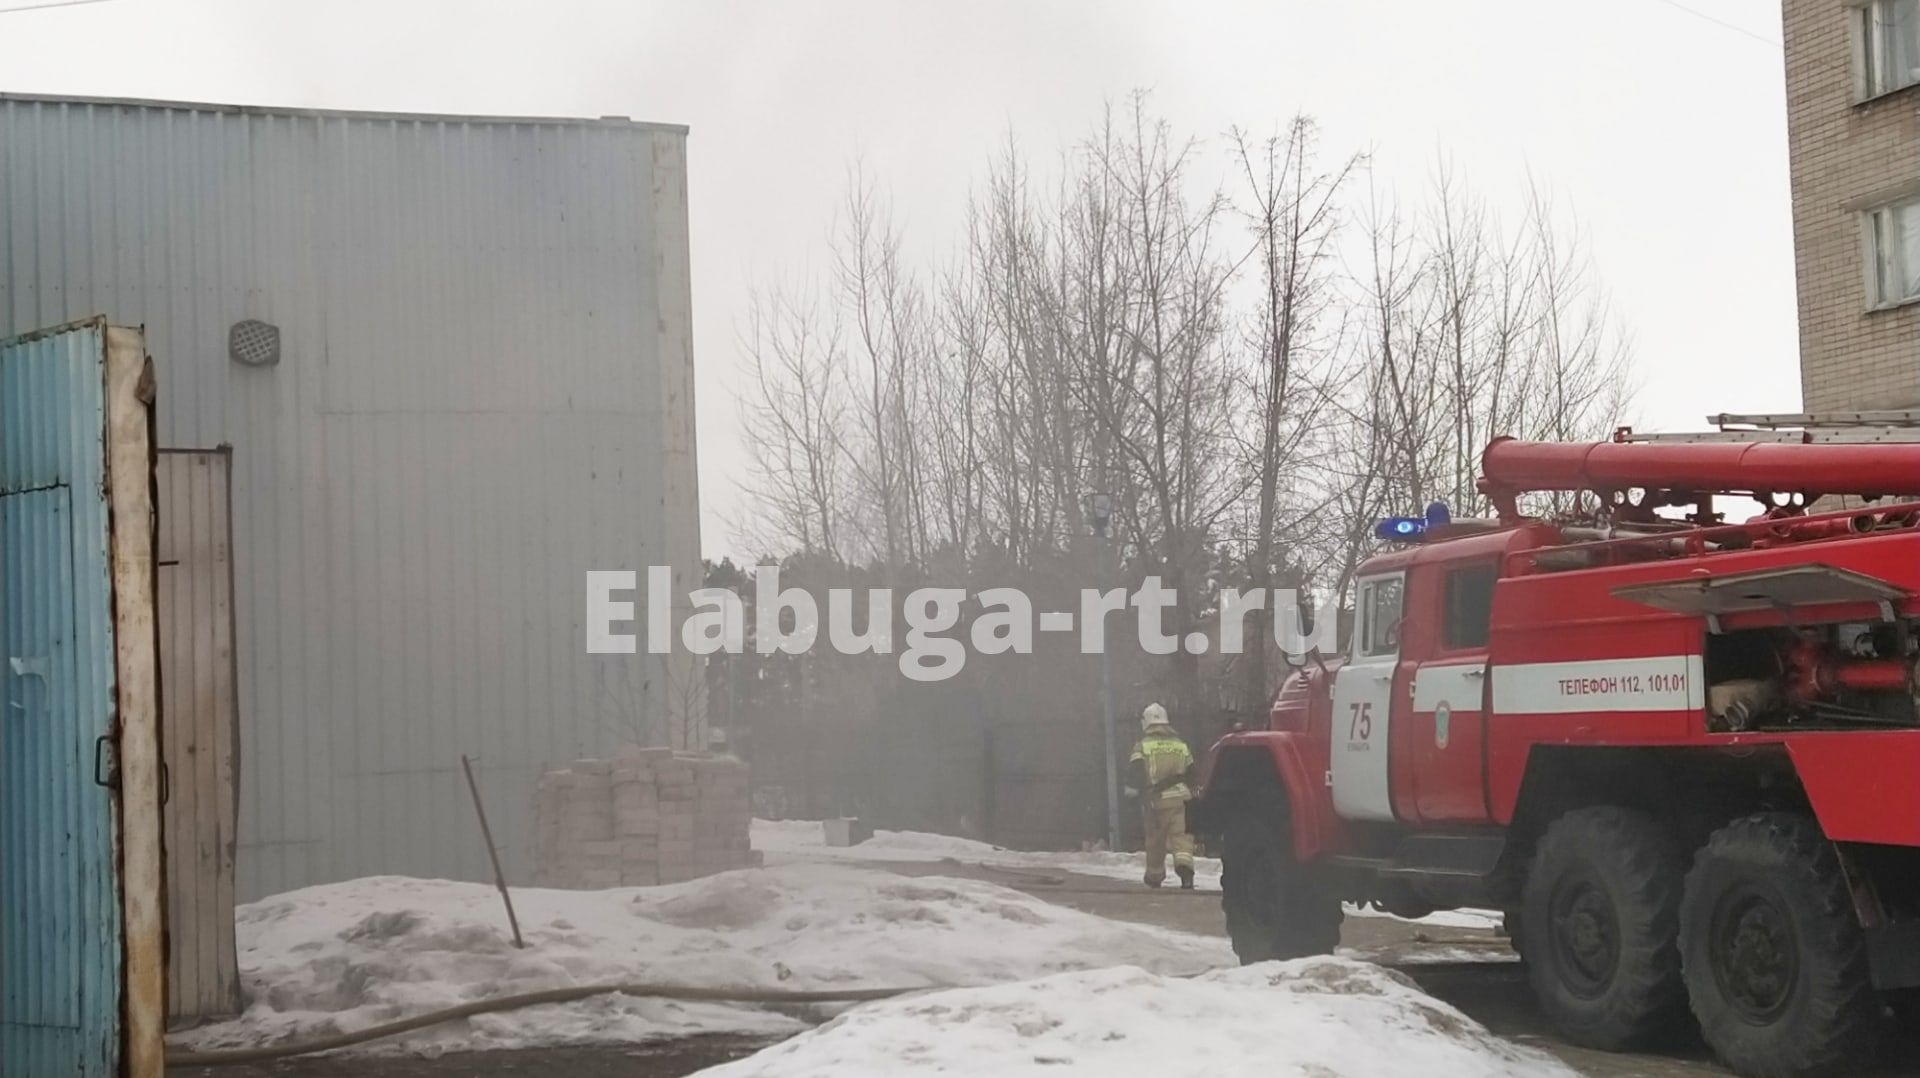 В Елабуге на складе произошел пожар